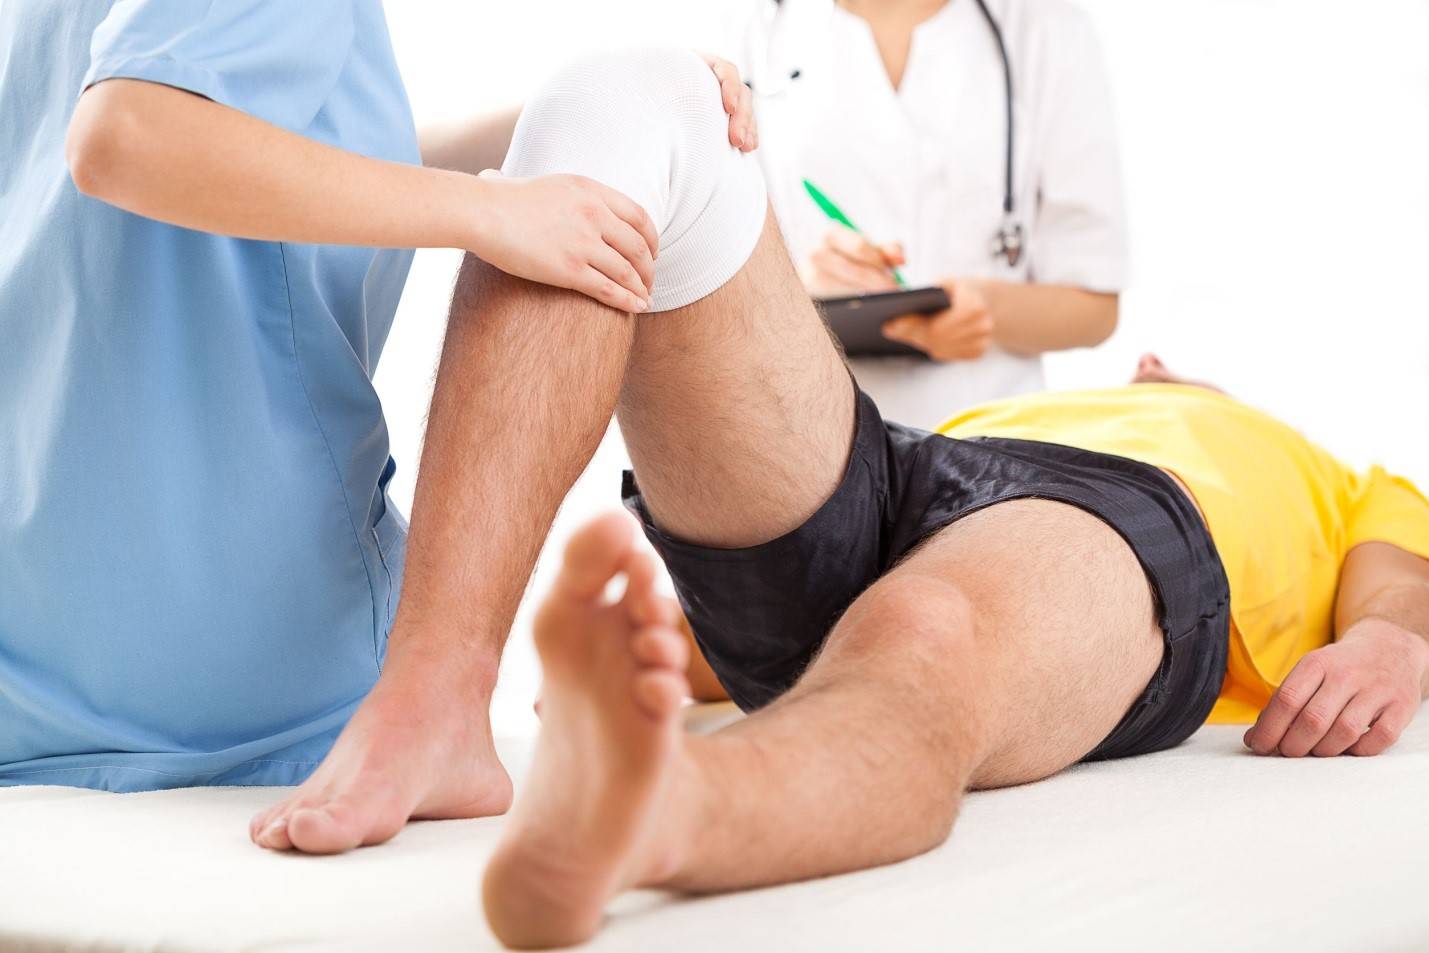 Повреждение мениска коленного сустава – симптомы и лечение без операции